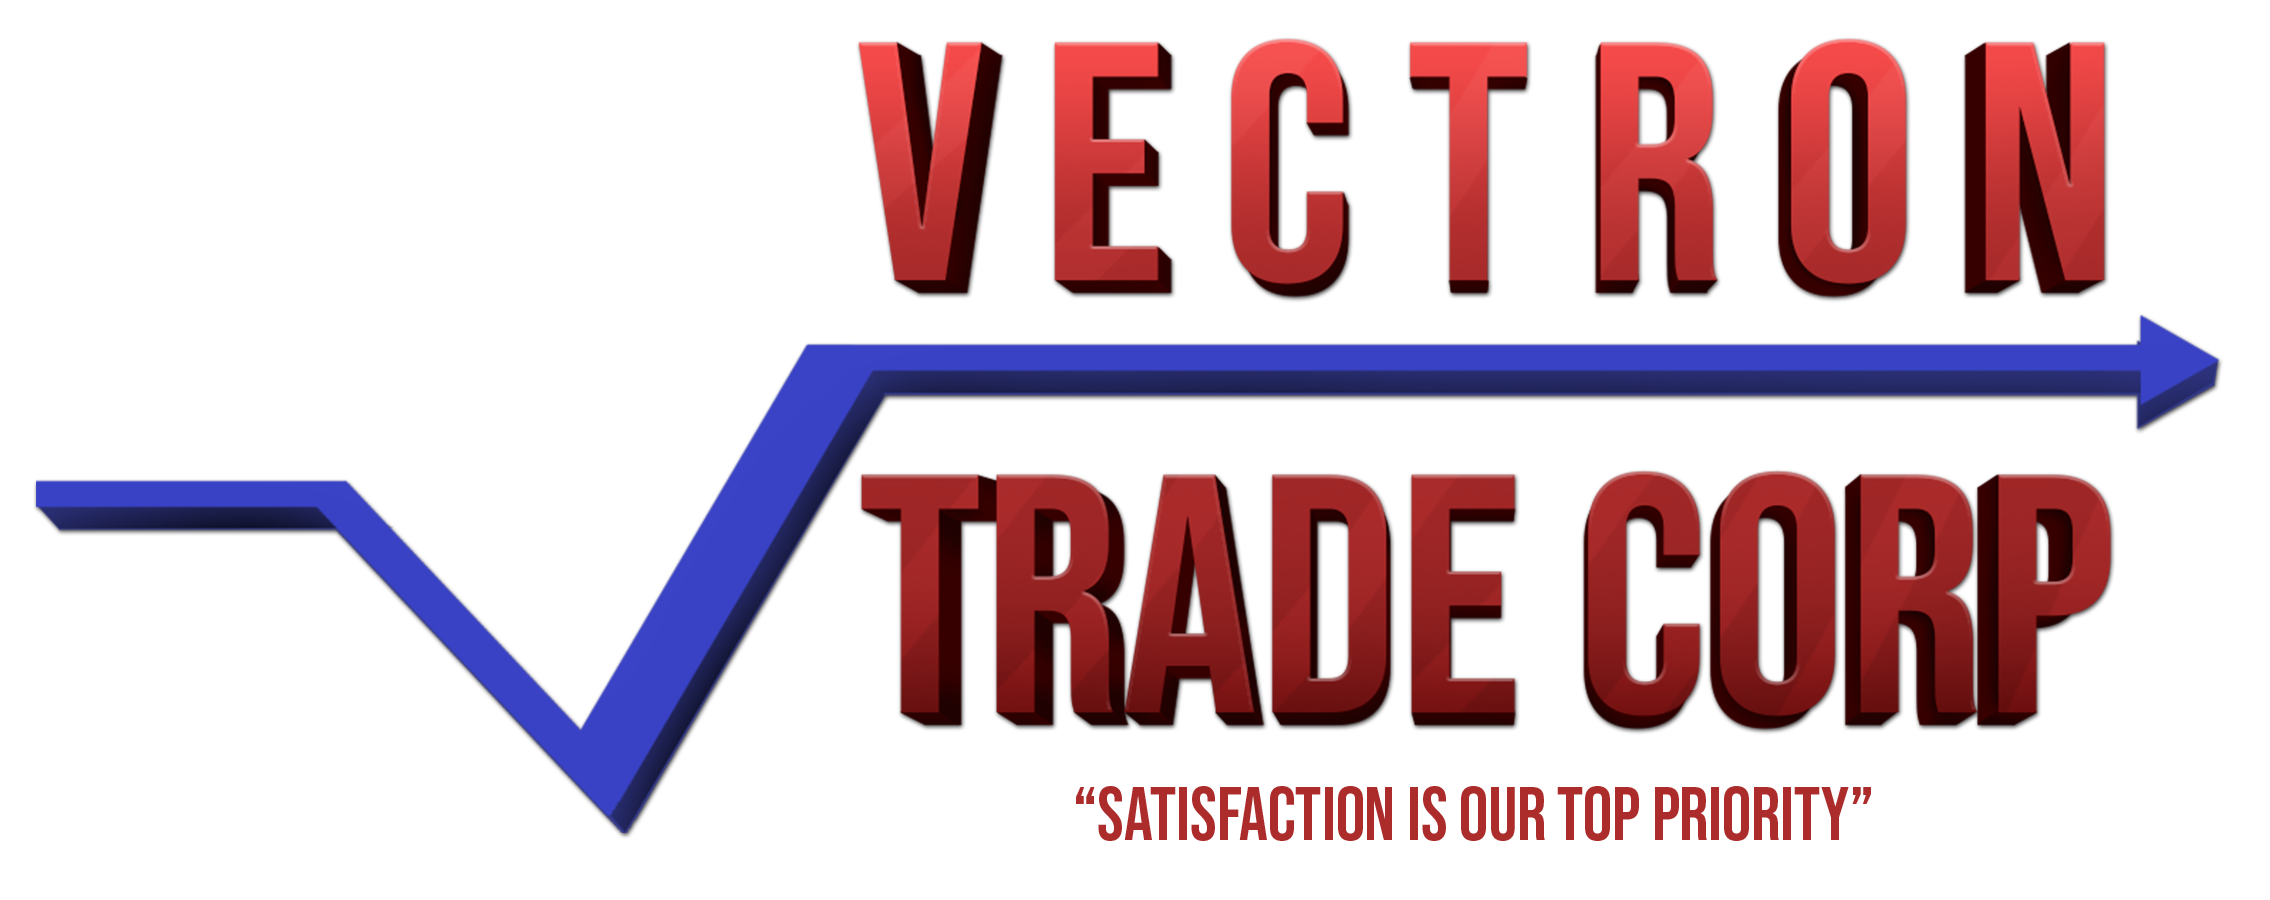 Vectron Trade Corporation